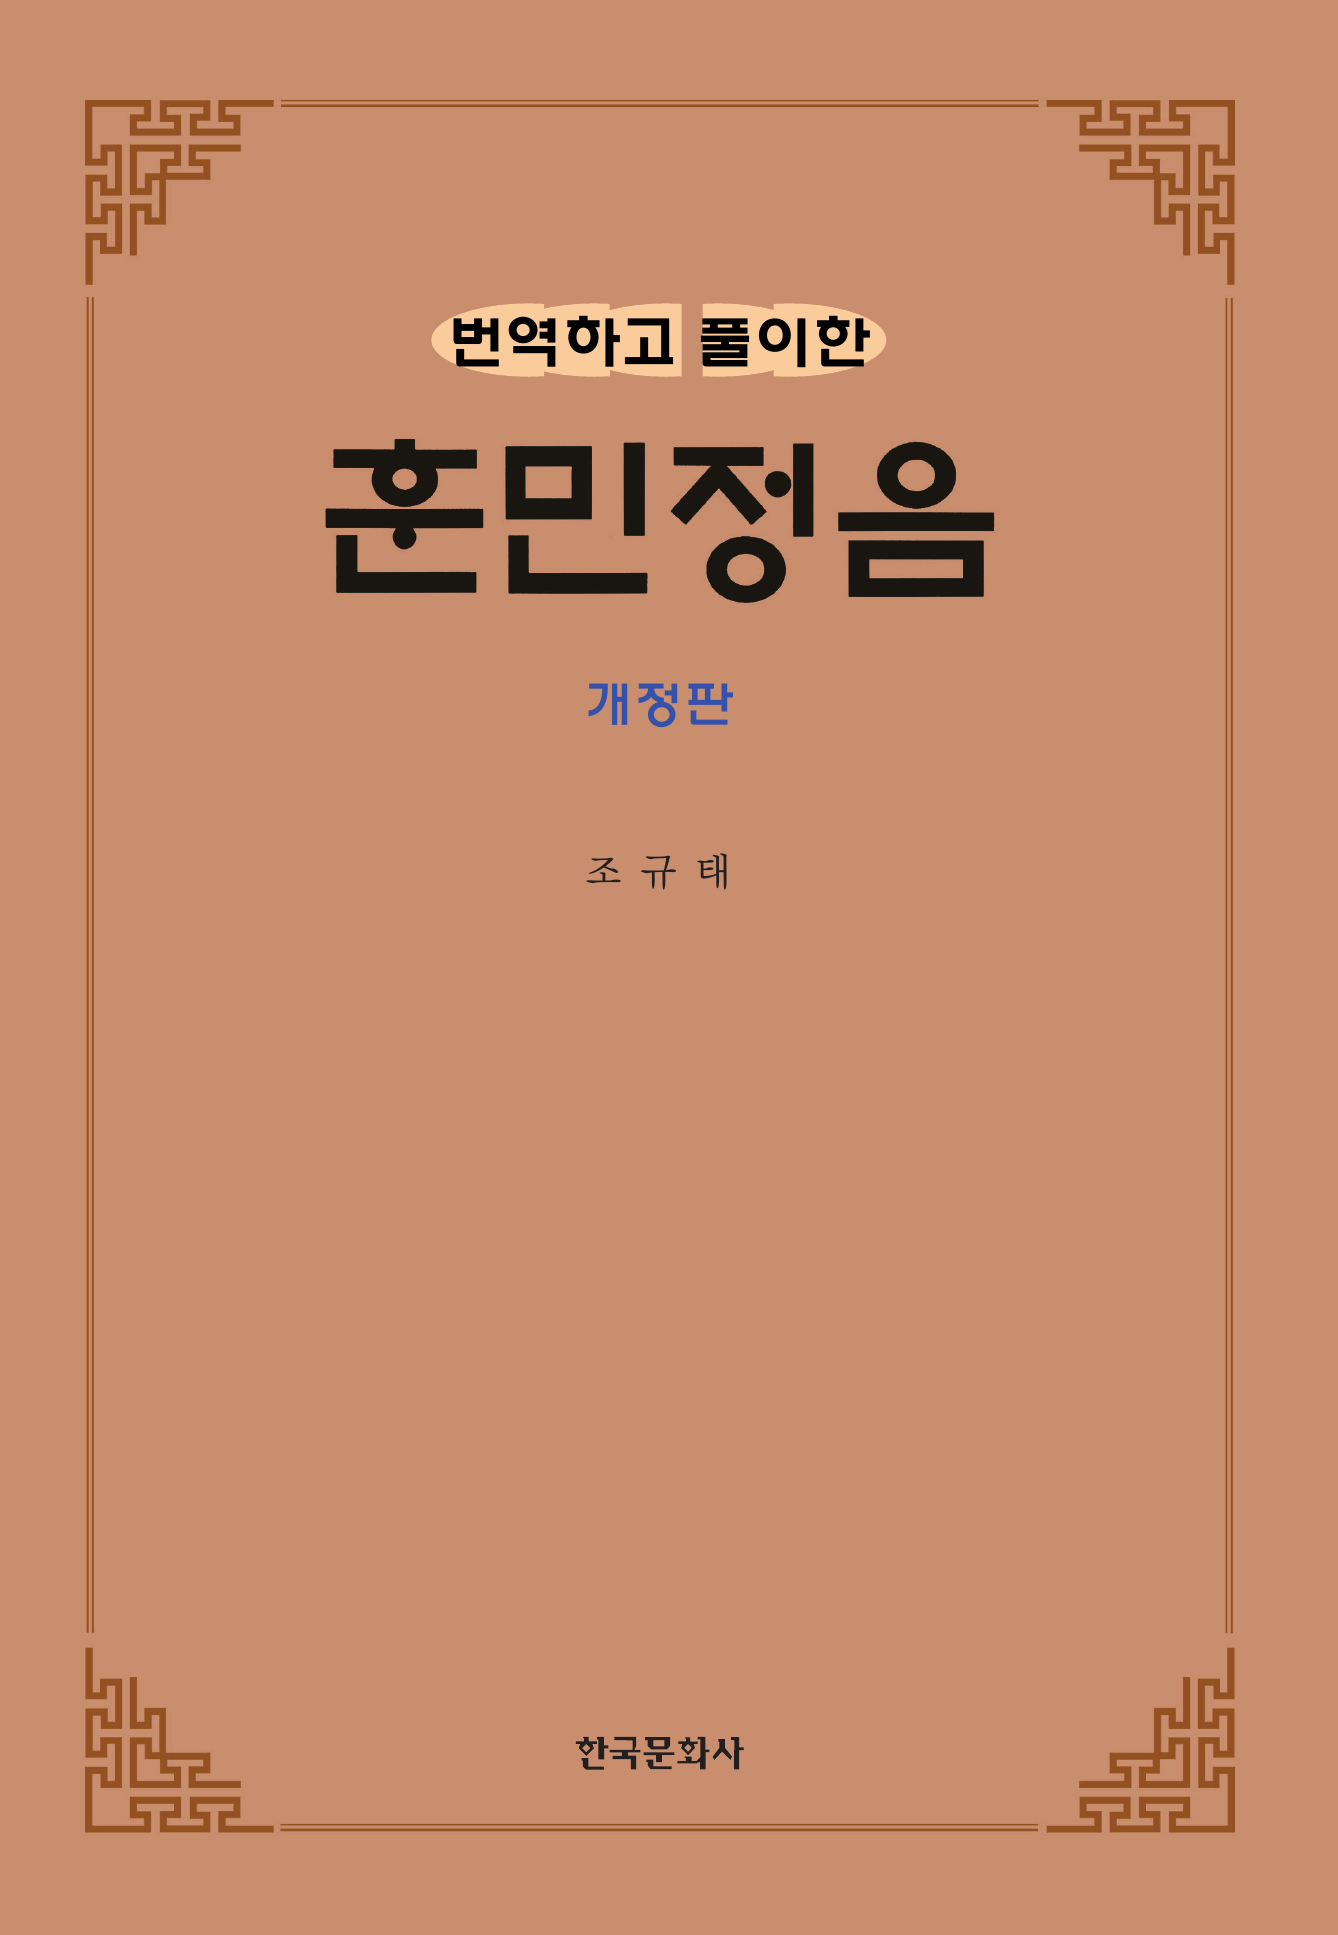 번역하고 풀이한 훈민정음 개정판